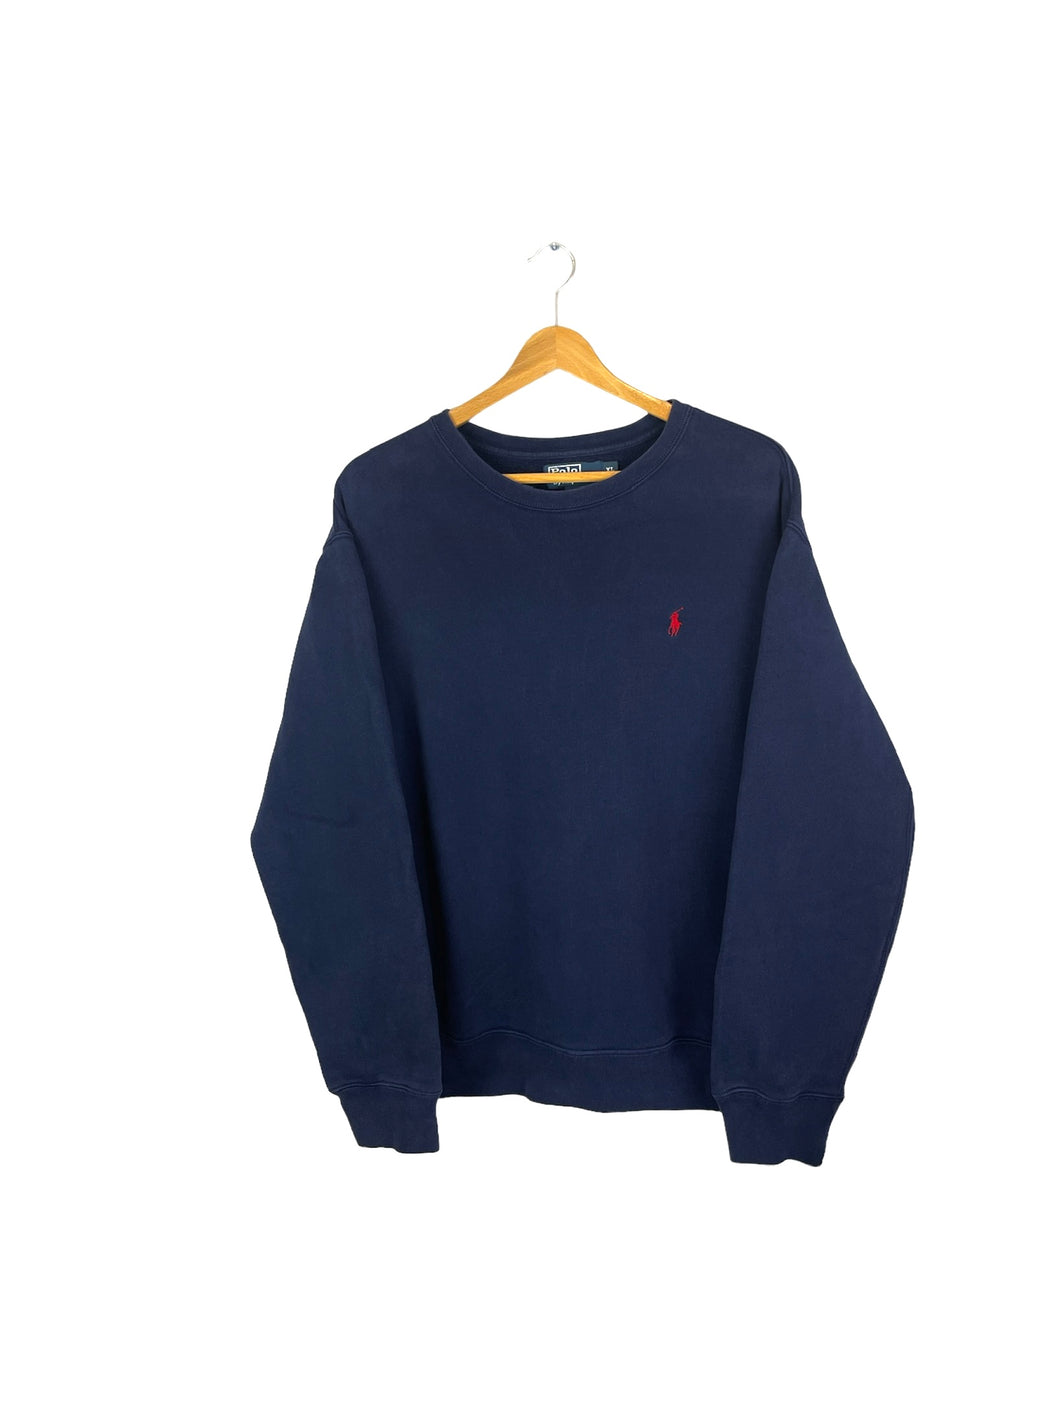 Ralph Lauren Sweatshirt - XLarge